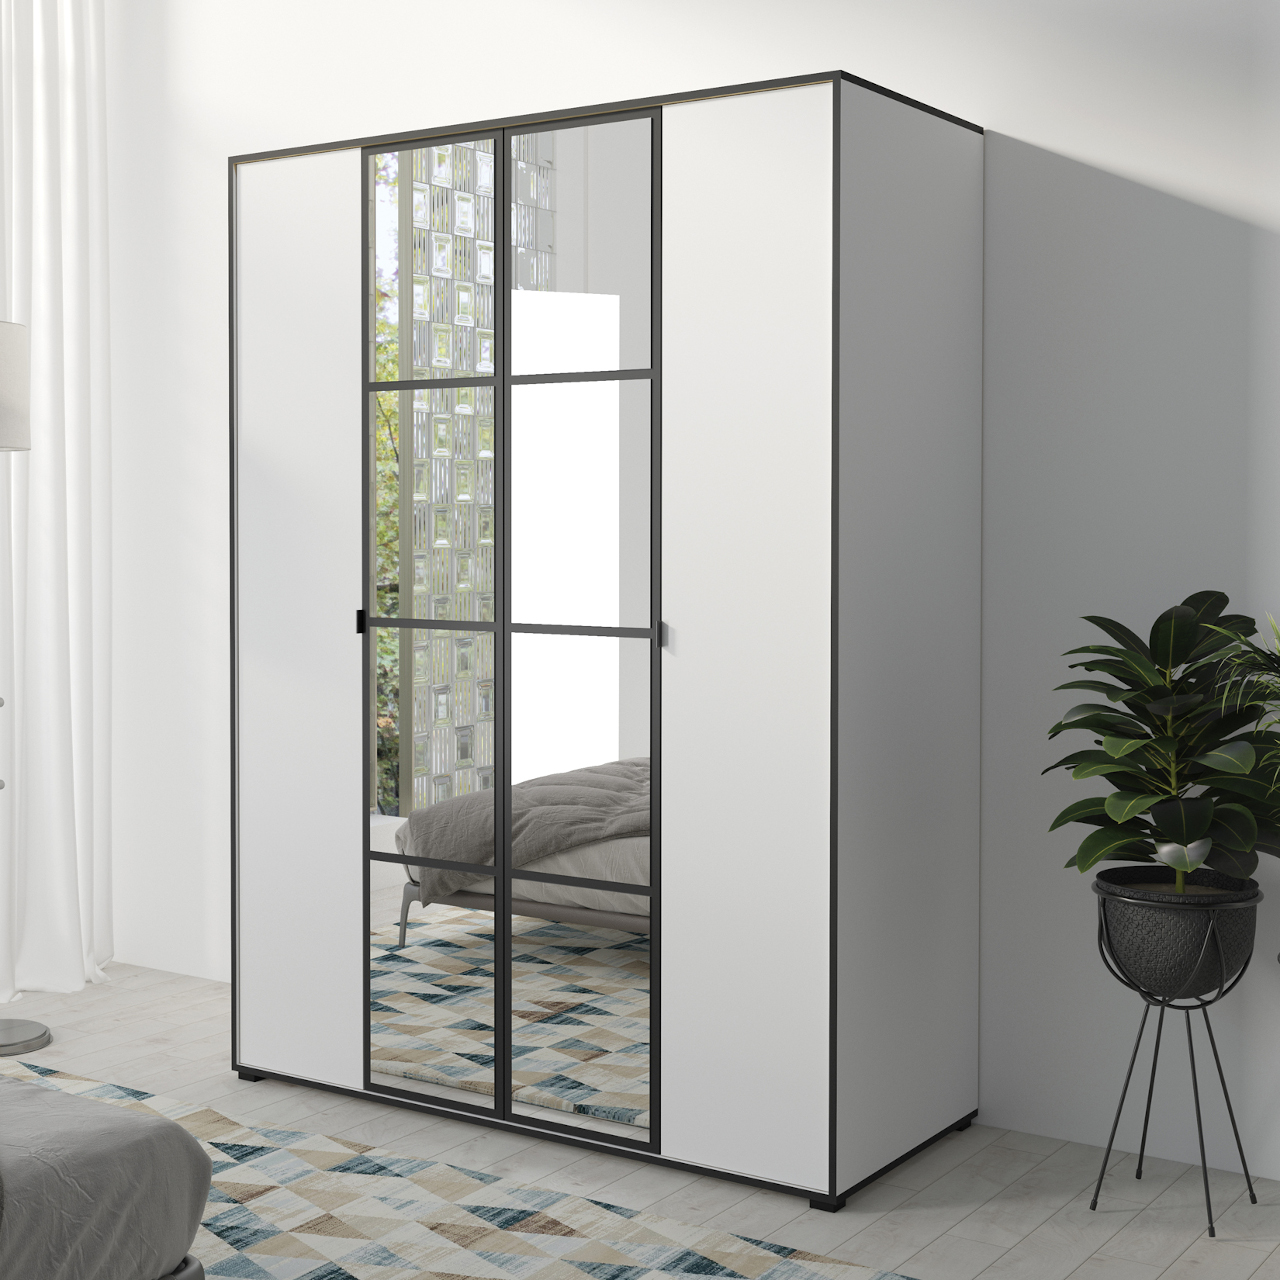 Sliding wardrobe with mirror OSLO I 150 white / black